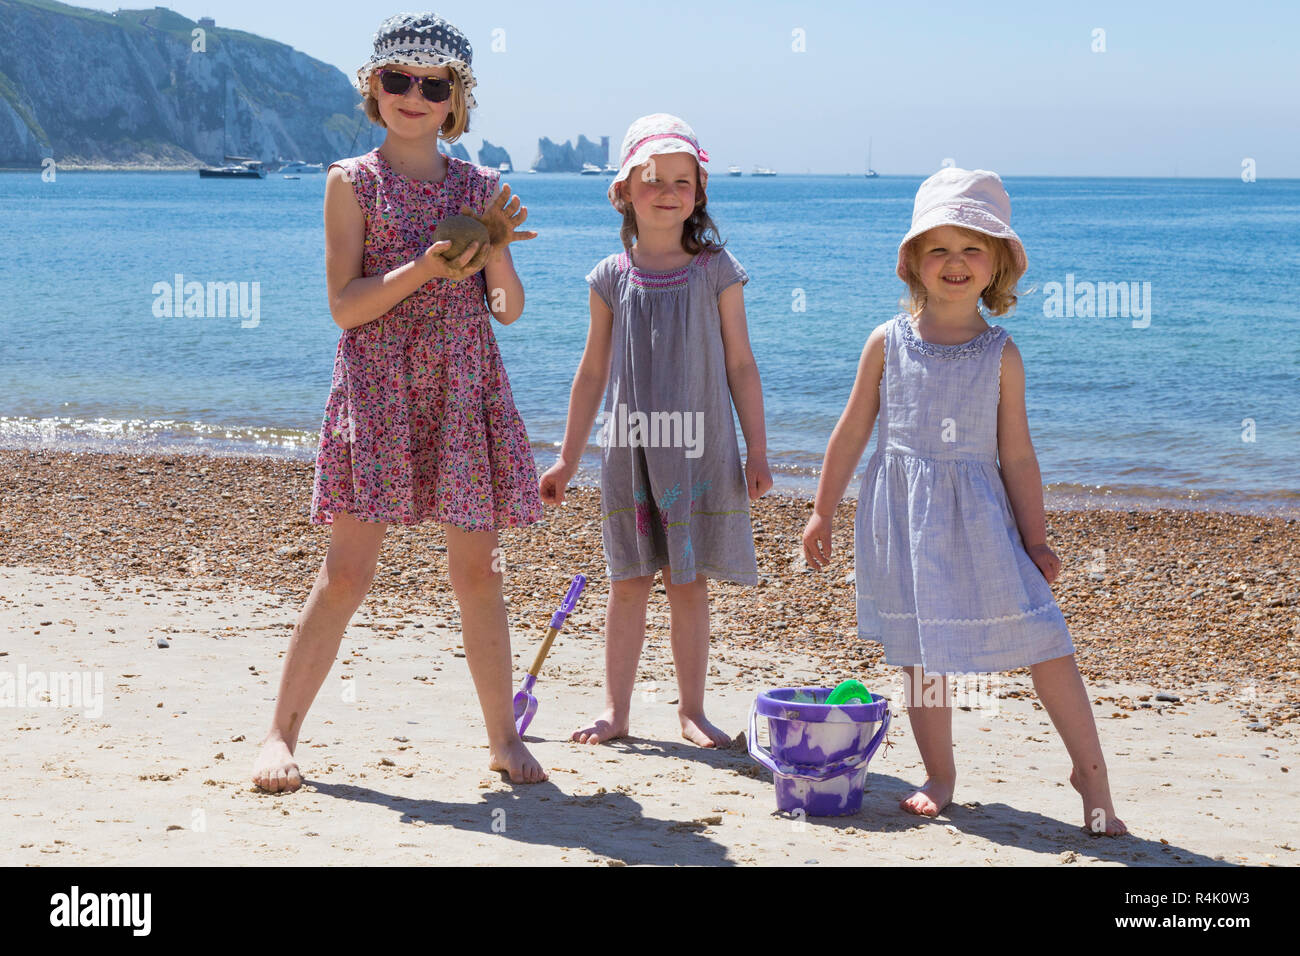 Drei Schwestern, junge Mädchen, genießen Sie eine Familie spielen am Strand von Alum Bay auf der Isle of Wight, Großbritannien. Sie tragen Hüte und Kleider/Kleidung von der Sonne (98) zu schützen Stockfoto